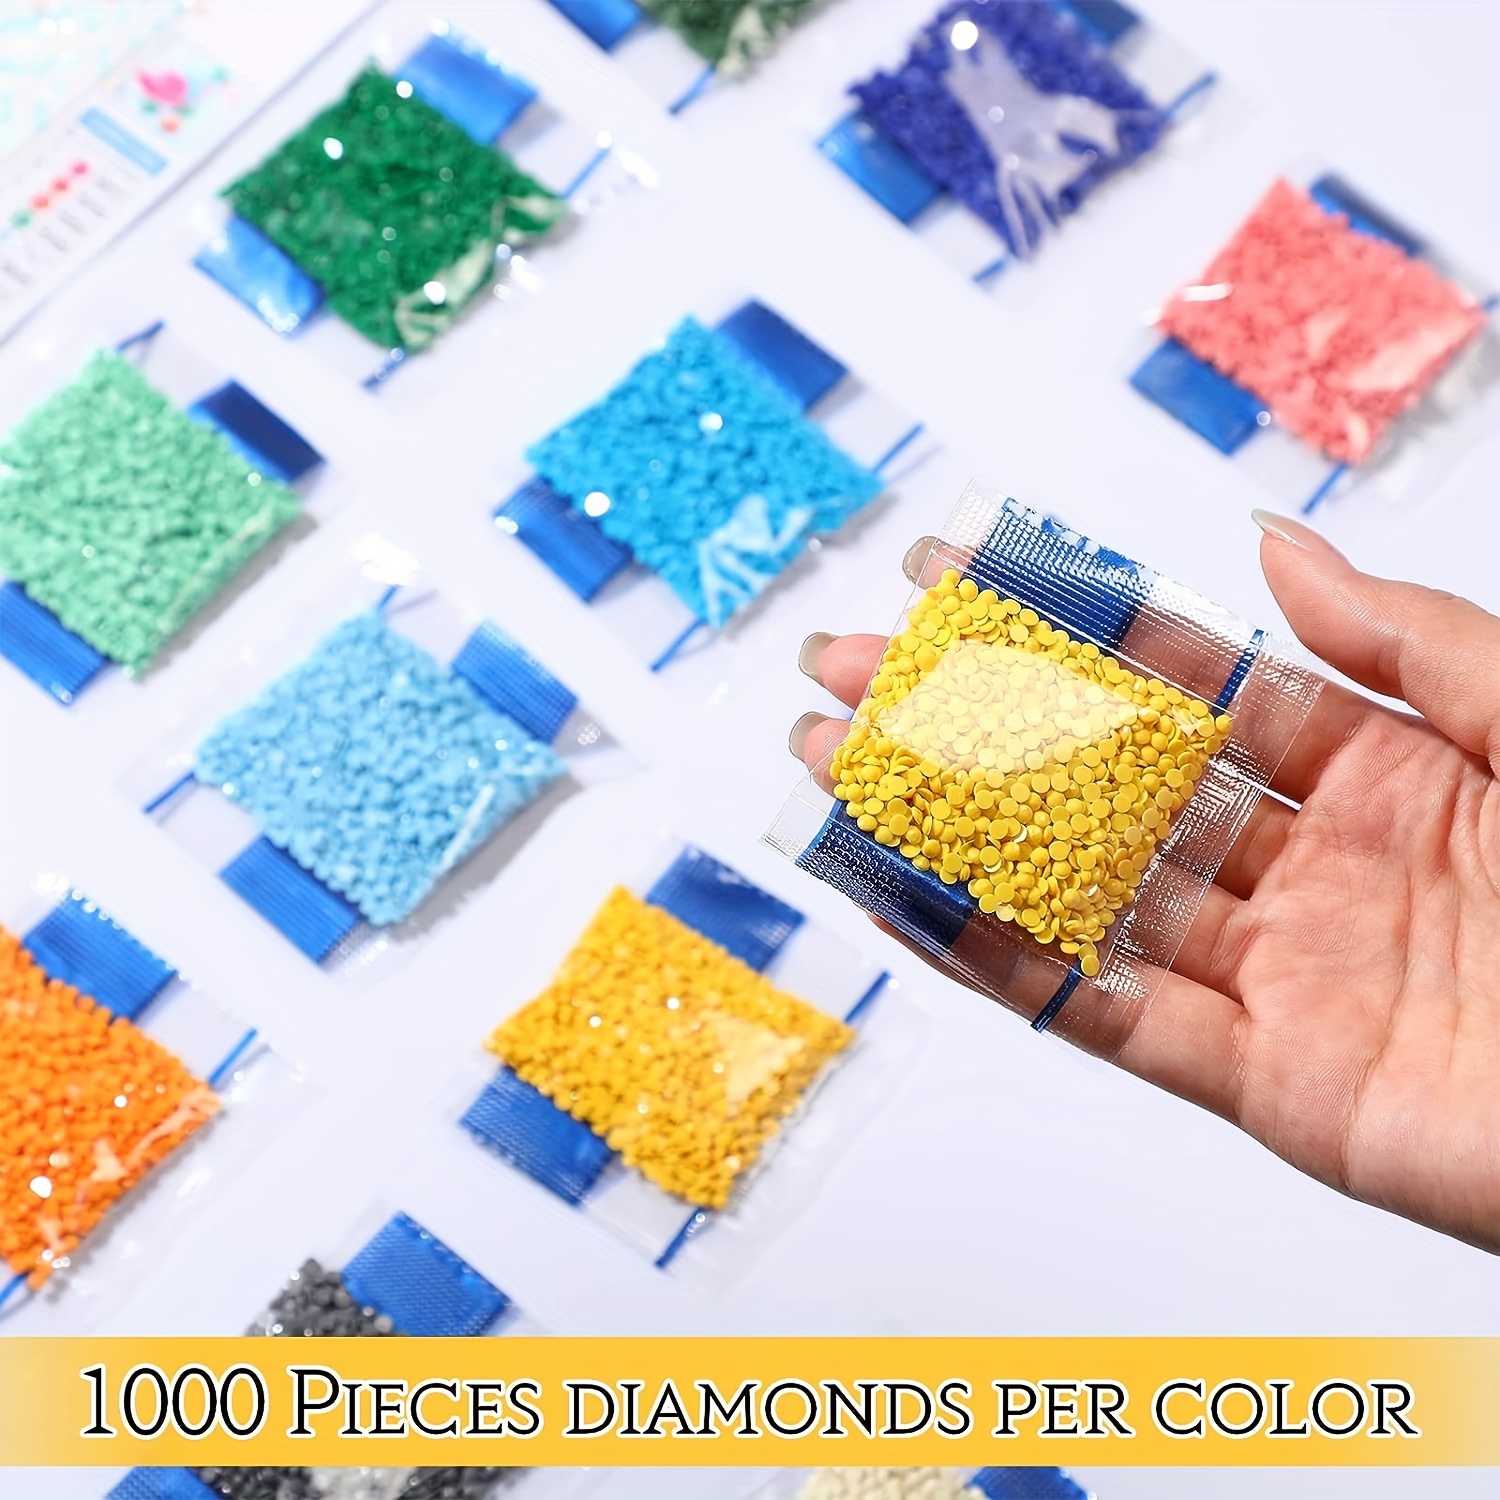 Tipos de Diamantes para Pintura Diamante / Types of Diamonds for Diamond  Painting